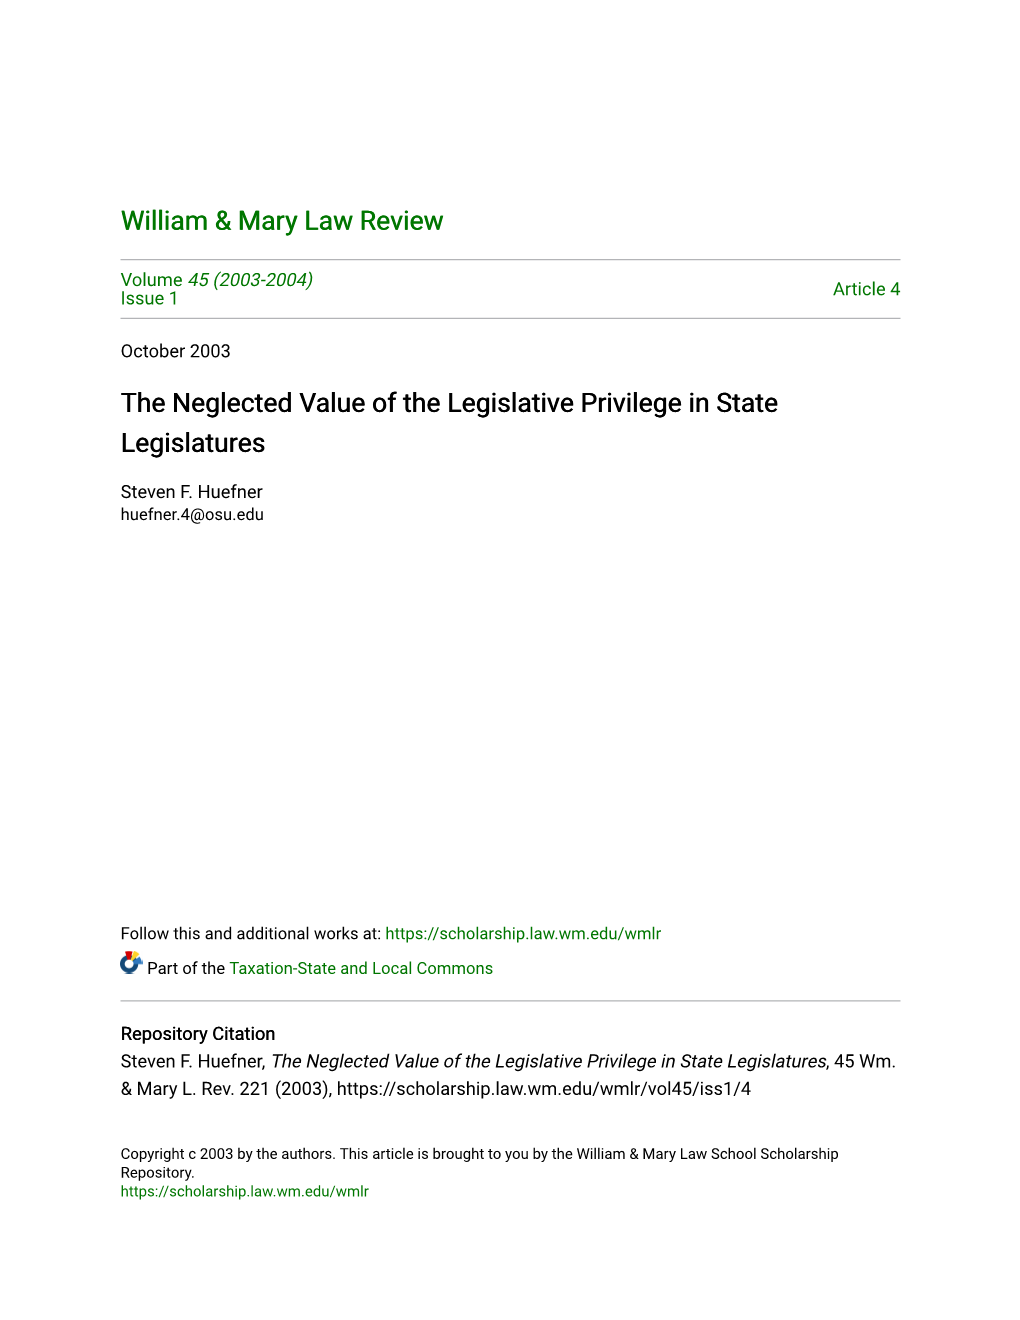 The Neglected Value of the Legislative Privilege in State Legislatures